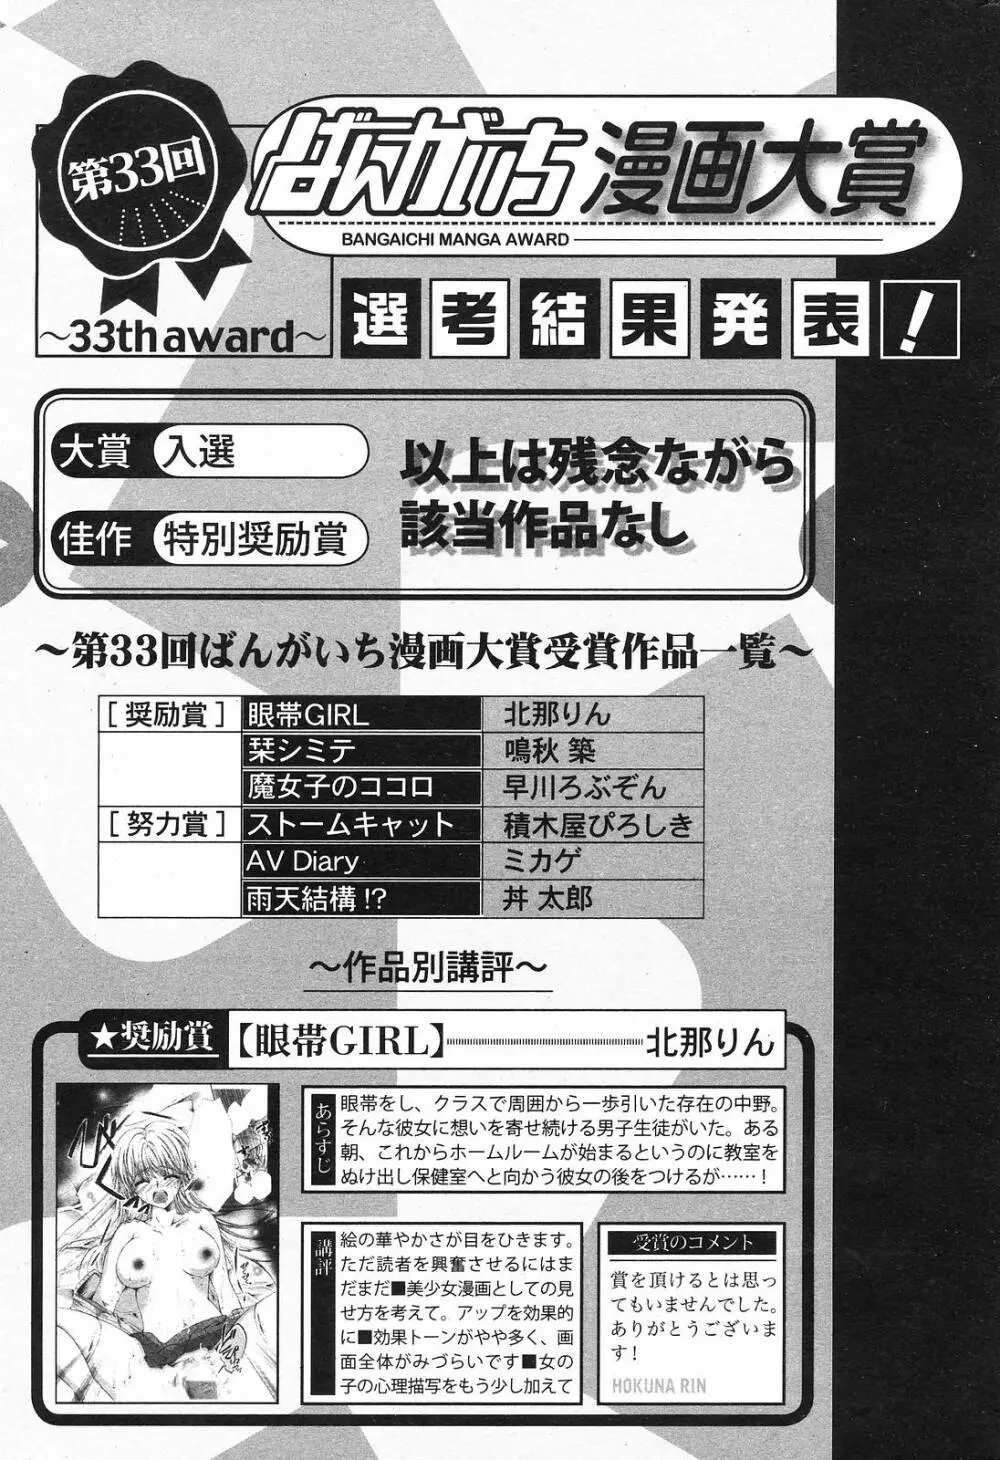 Manga Bangaichi 2008-11 229ページ